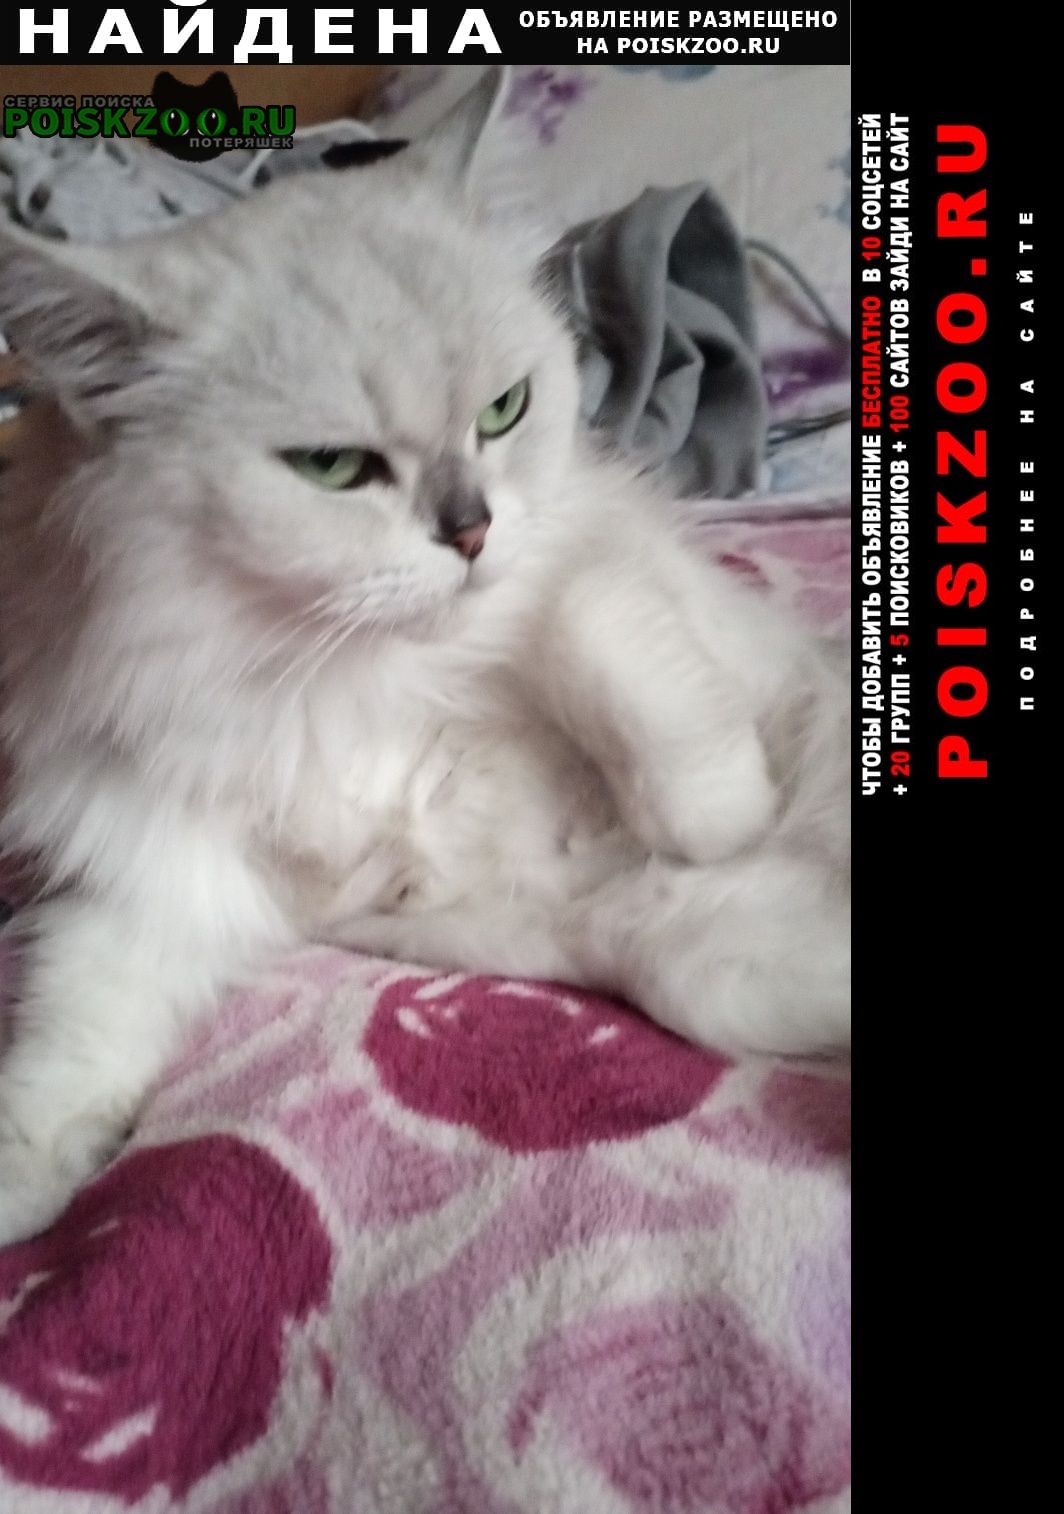 Найдена кошка окрас белый чуток с серым, зелёные глаза Москва